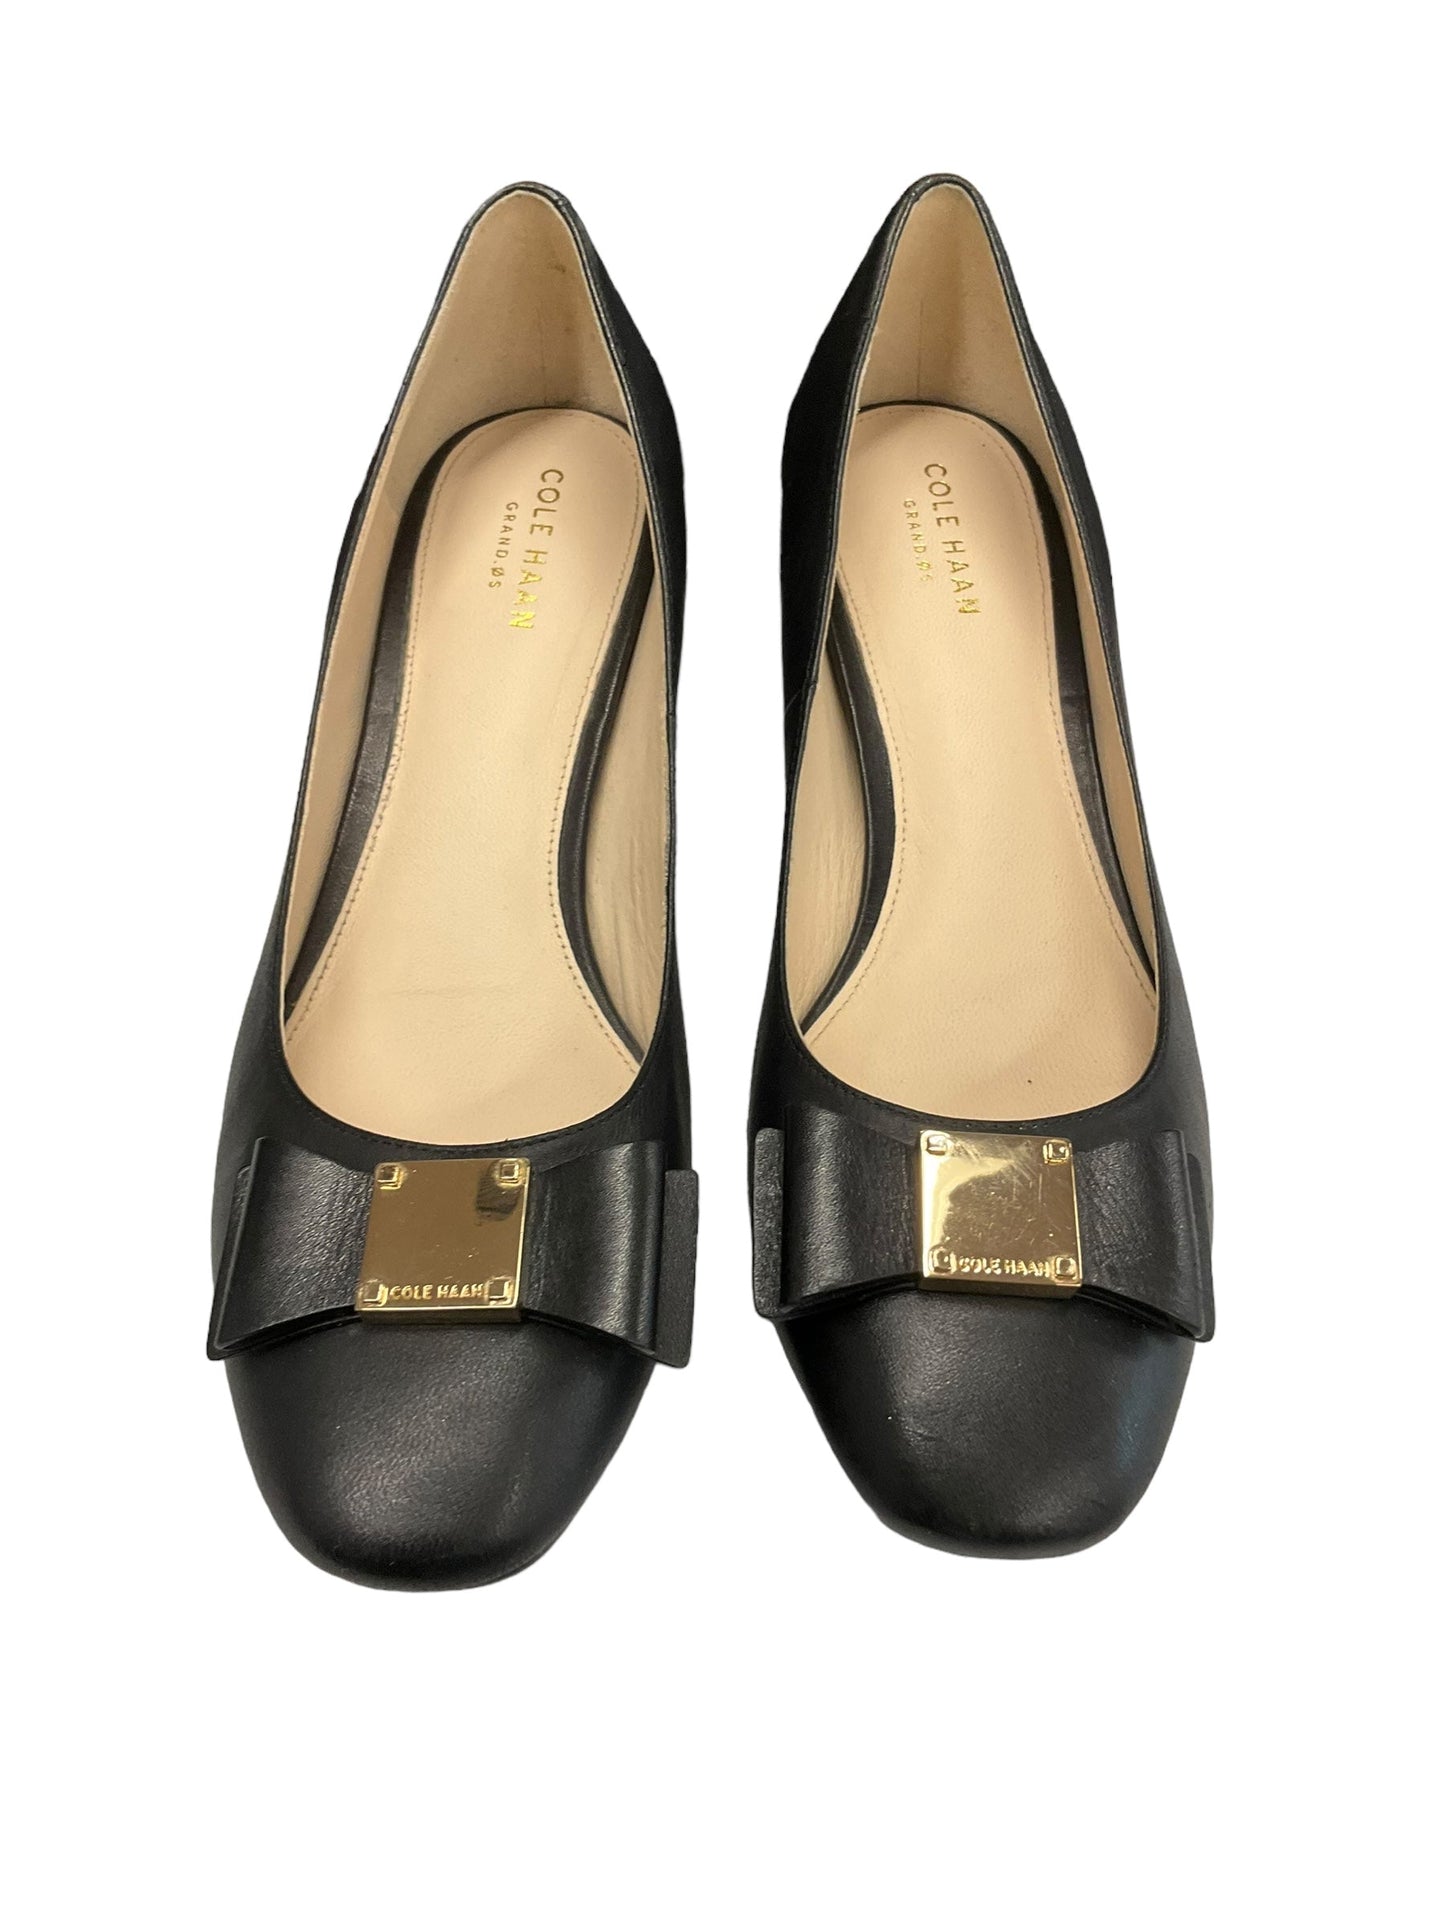 Black Shoes Heels Block Cole-haan, Size 7.5